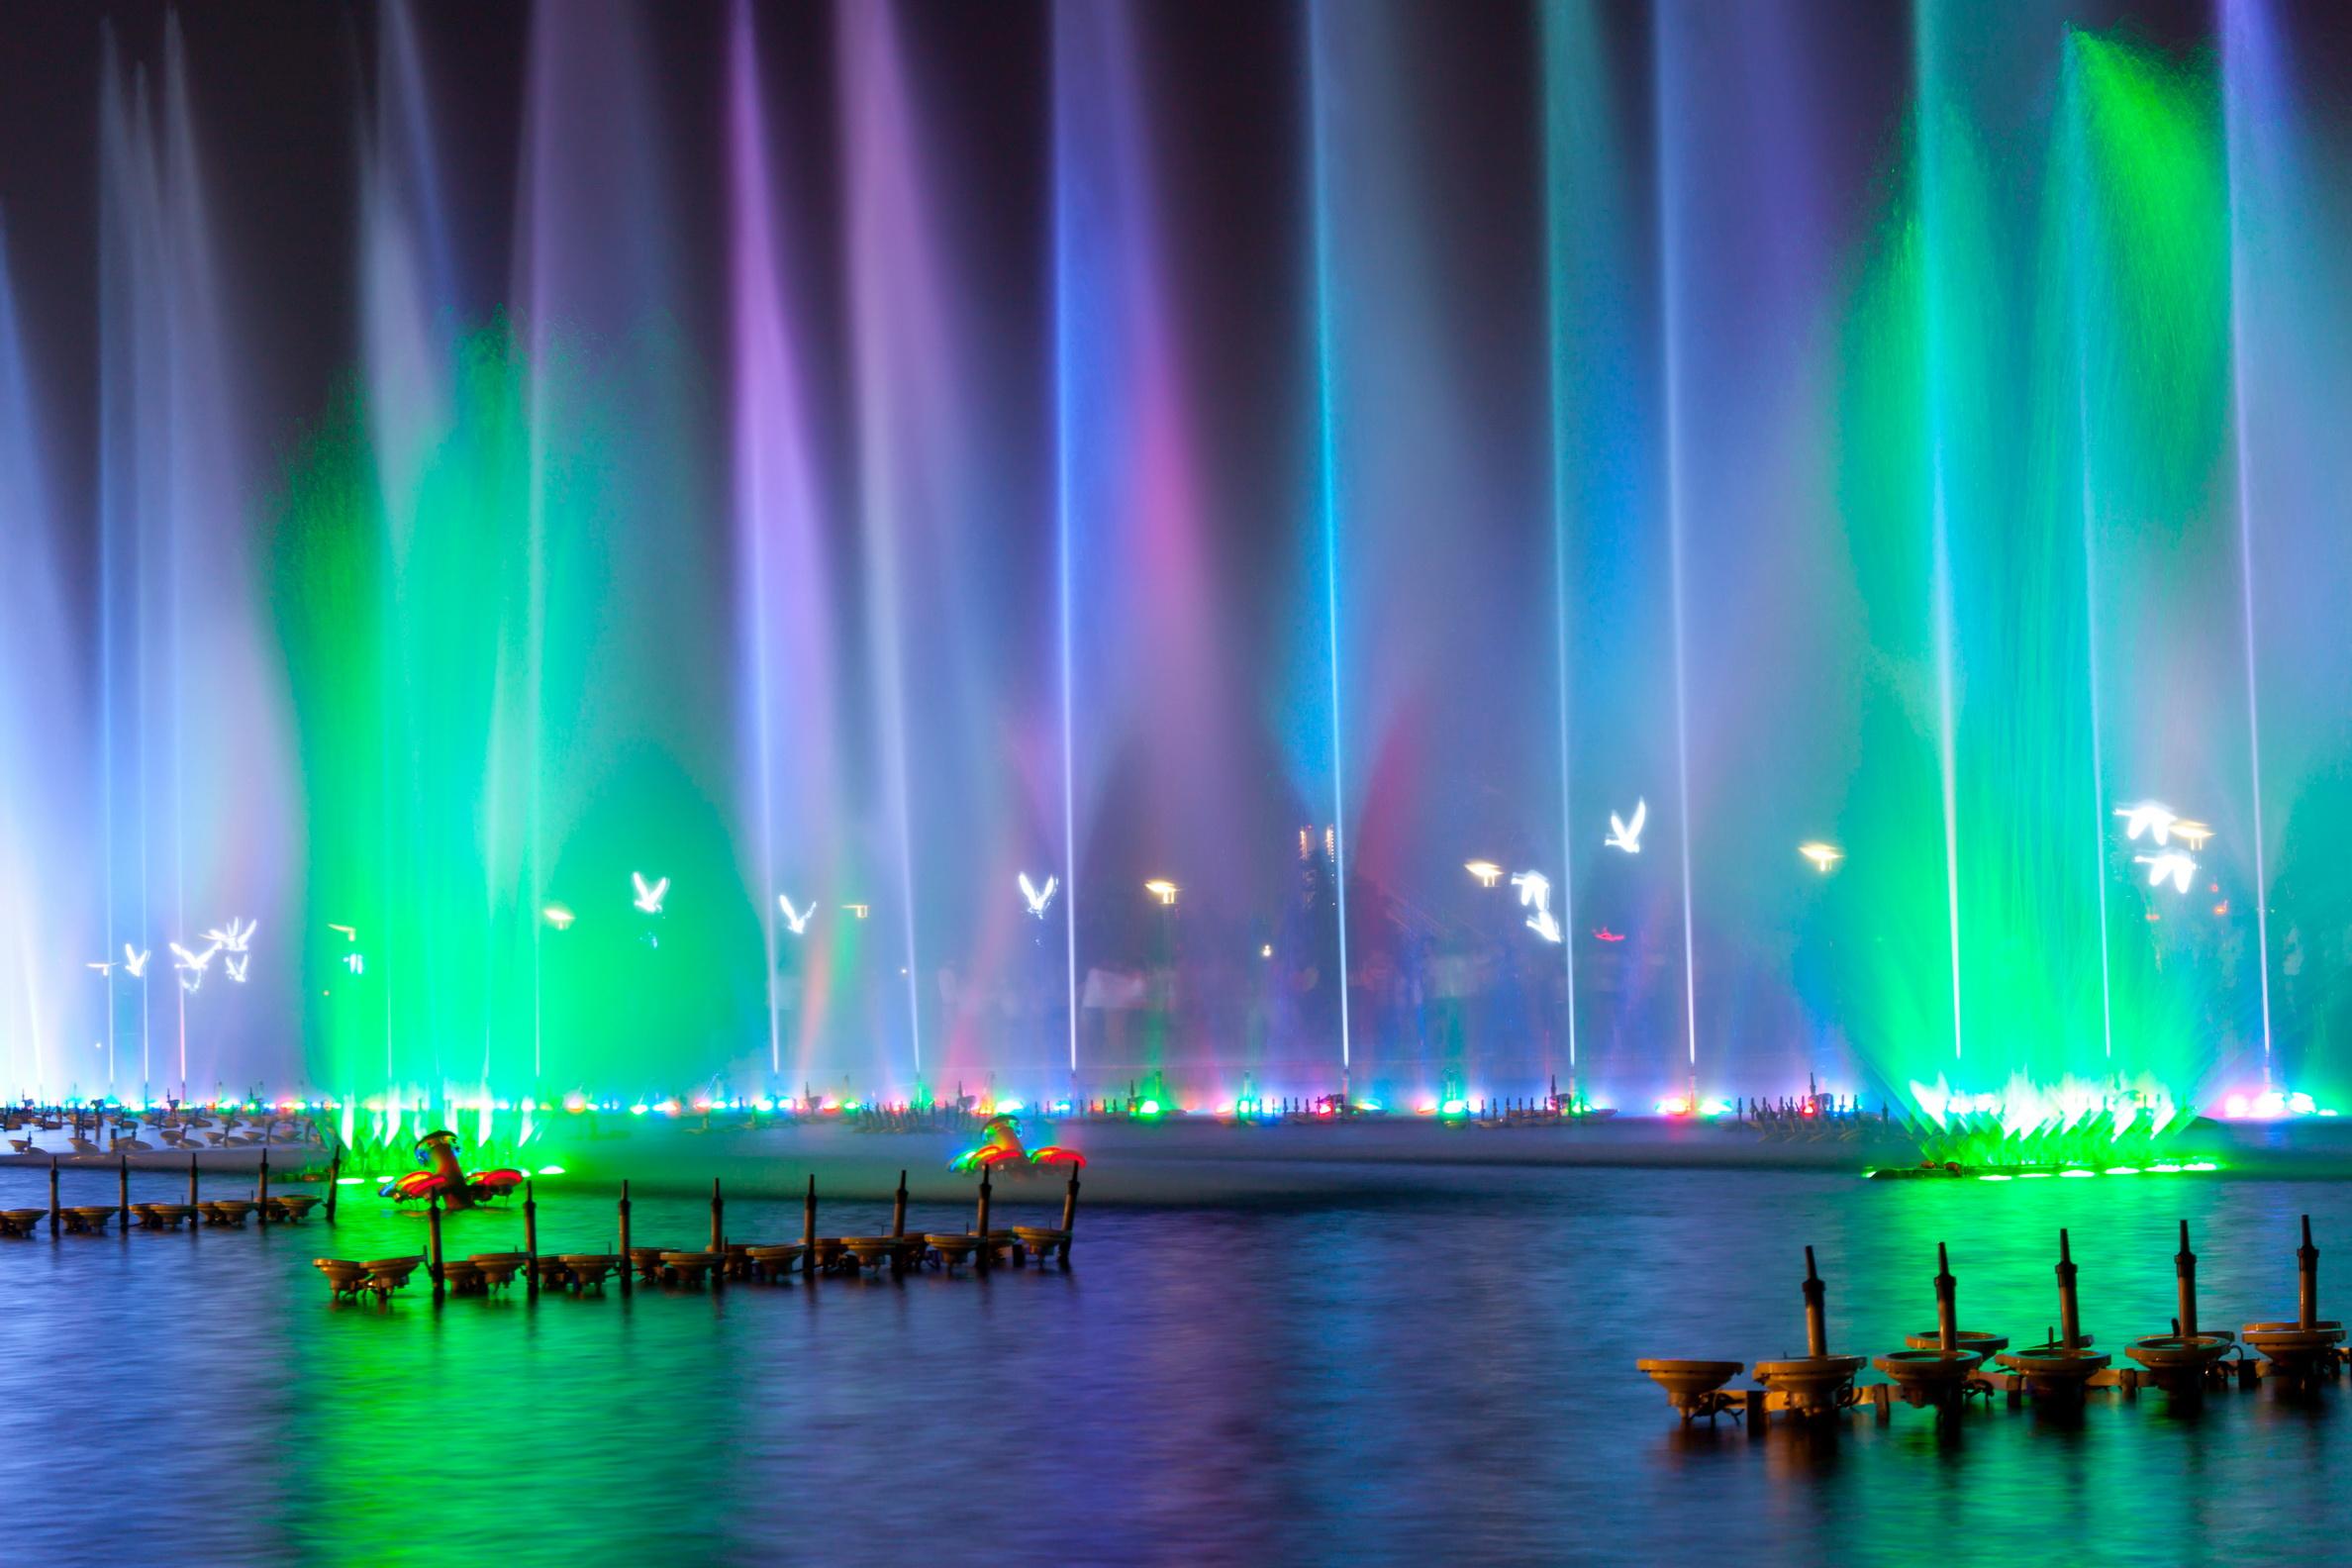 音乐和喷泉才是绝配,深圳海上世界喷泉庆国庆!